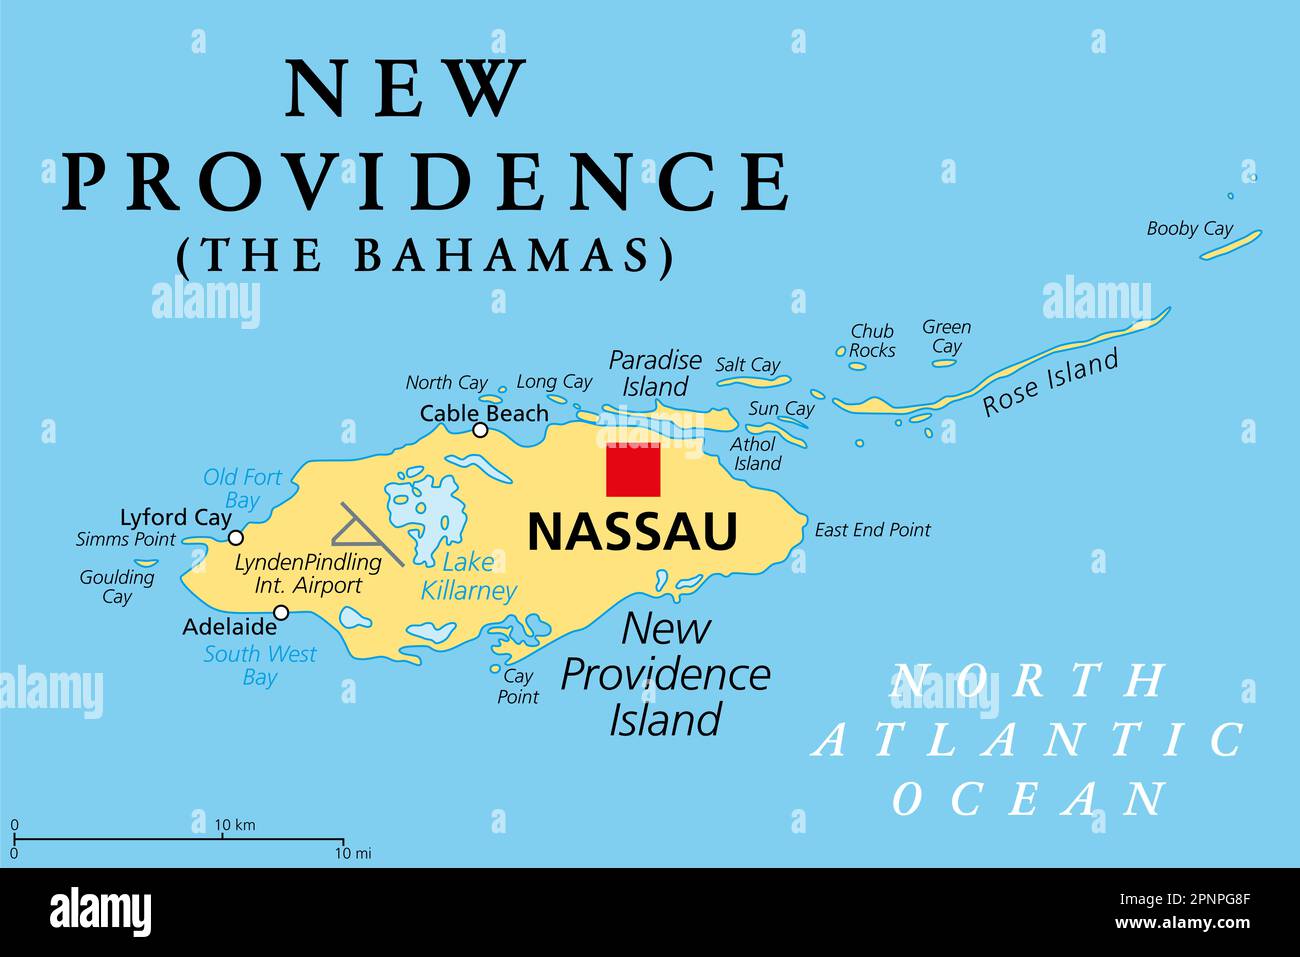 New Providence Island, carte politique, avec Nassau, la capitale des Bahamas, un pays insulaire dans les Antilles dans l'Atlantique Nord. Banque D'Images